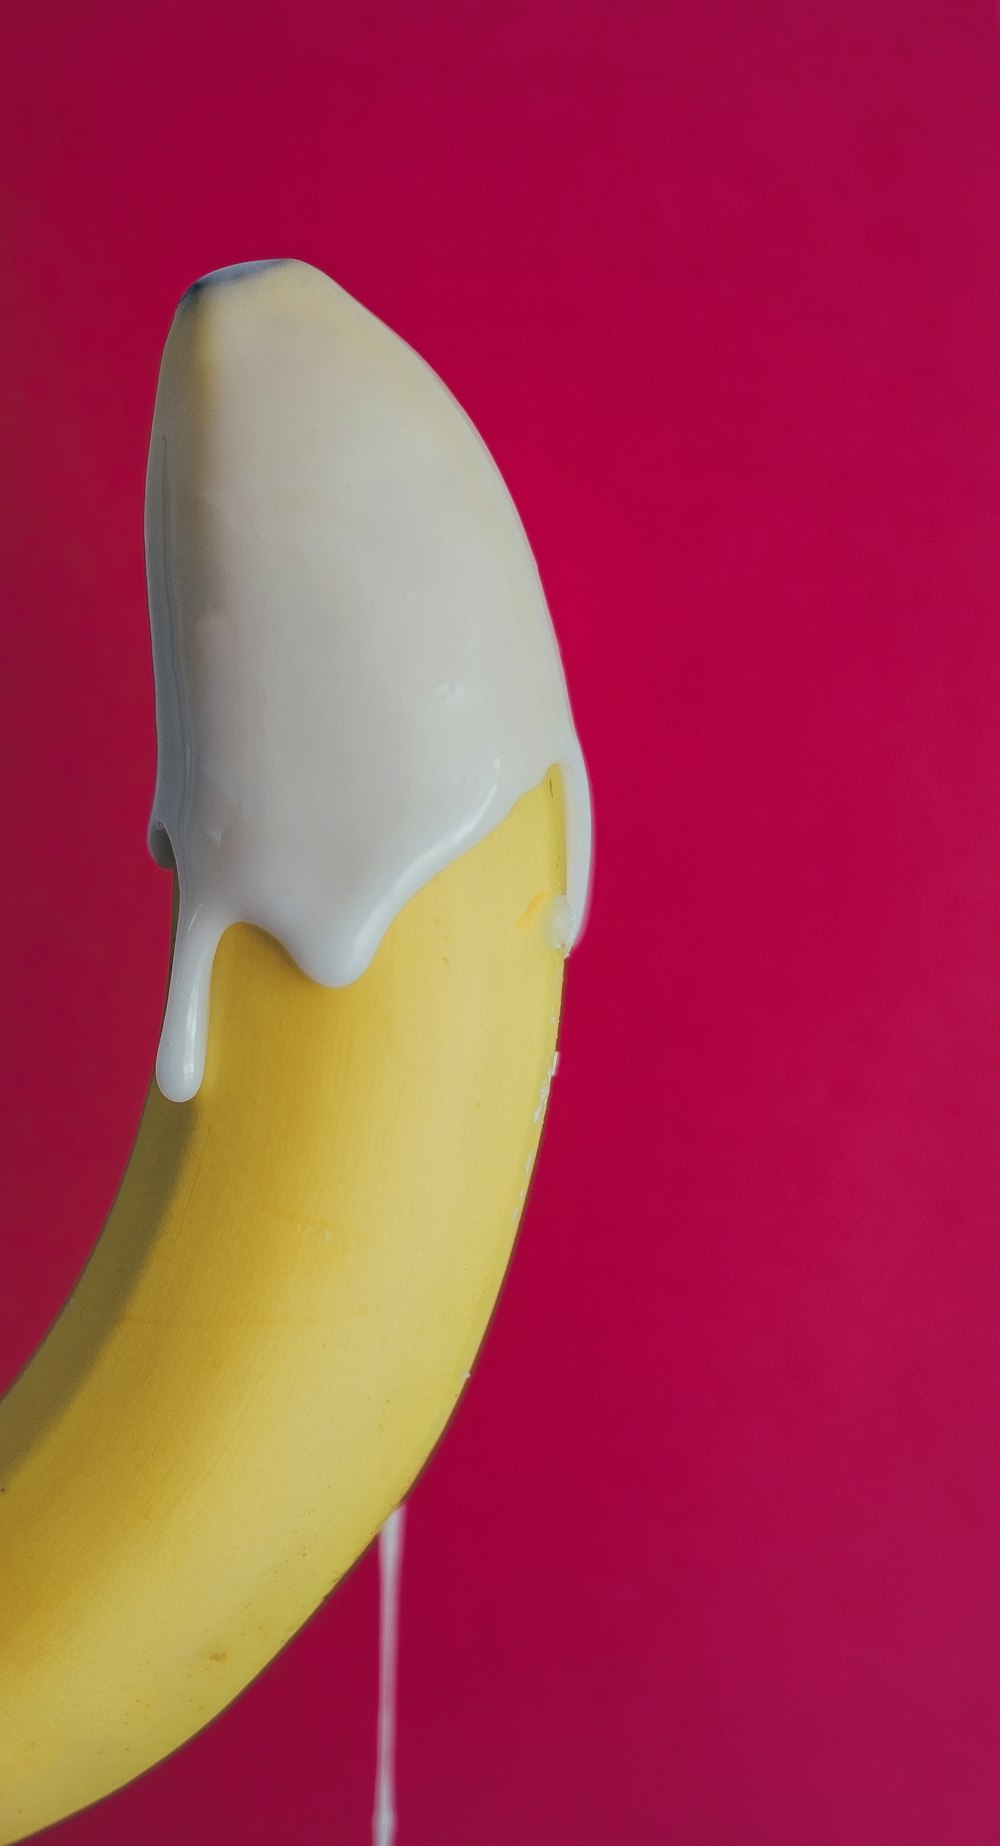 yellow banana with cream